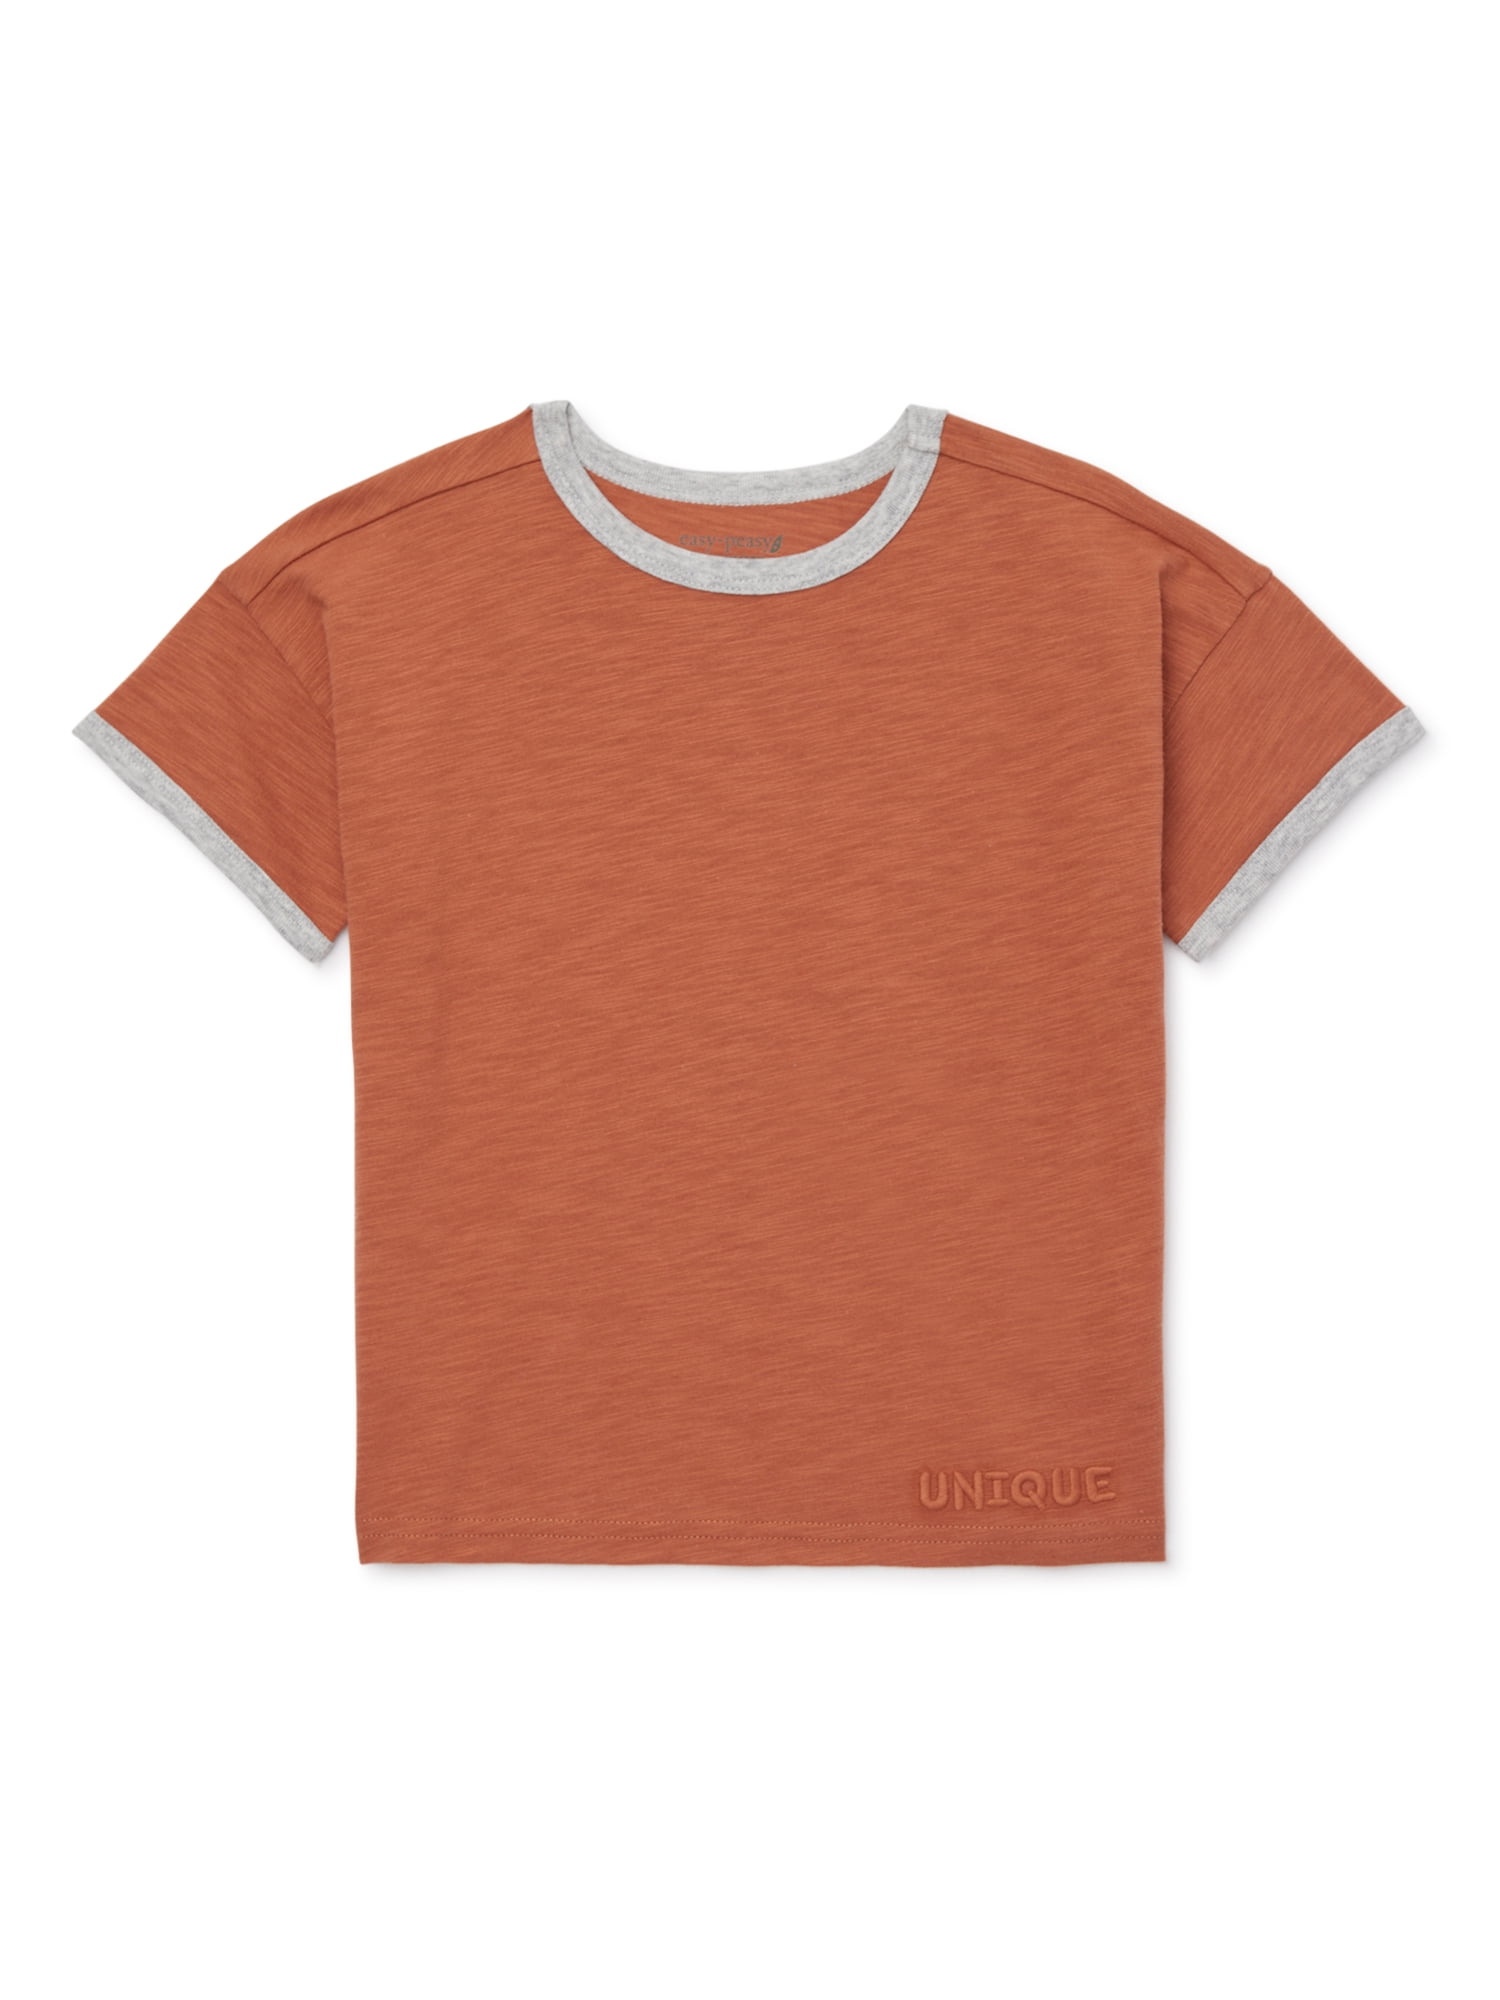 easy-peasy Toddler Boy Short Sleeve Boxy T-Shirt, Sizes 12M-5T